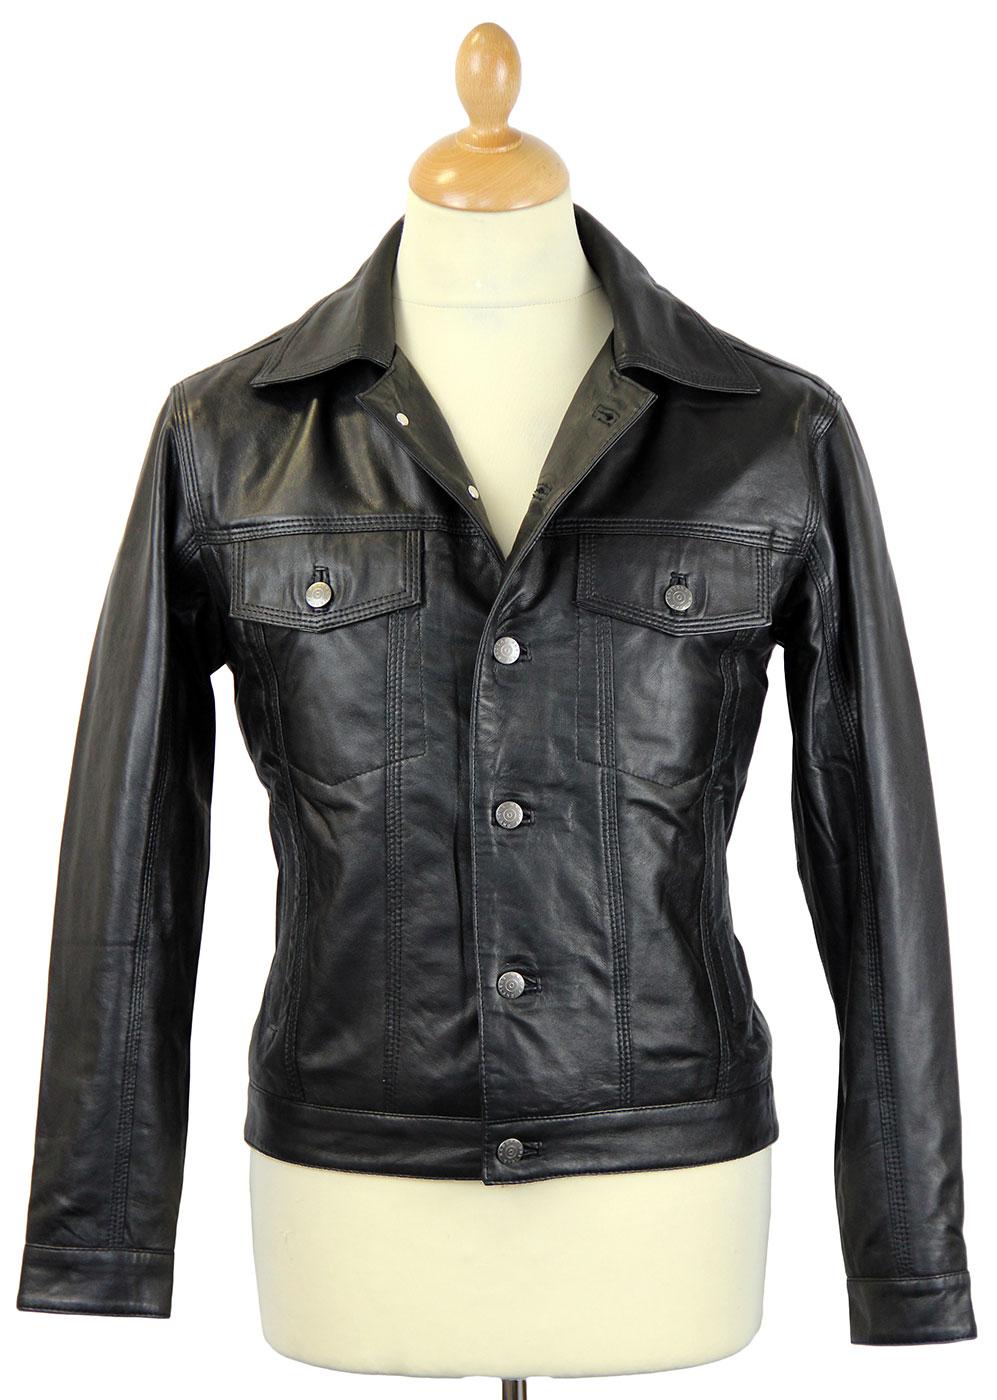 MADCAP ENGLAND Badlands Retro Mod Leather Western Jacket Black